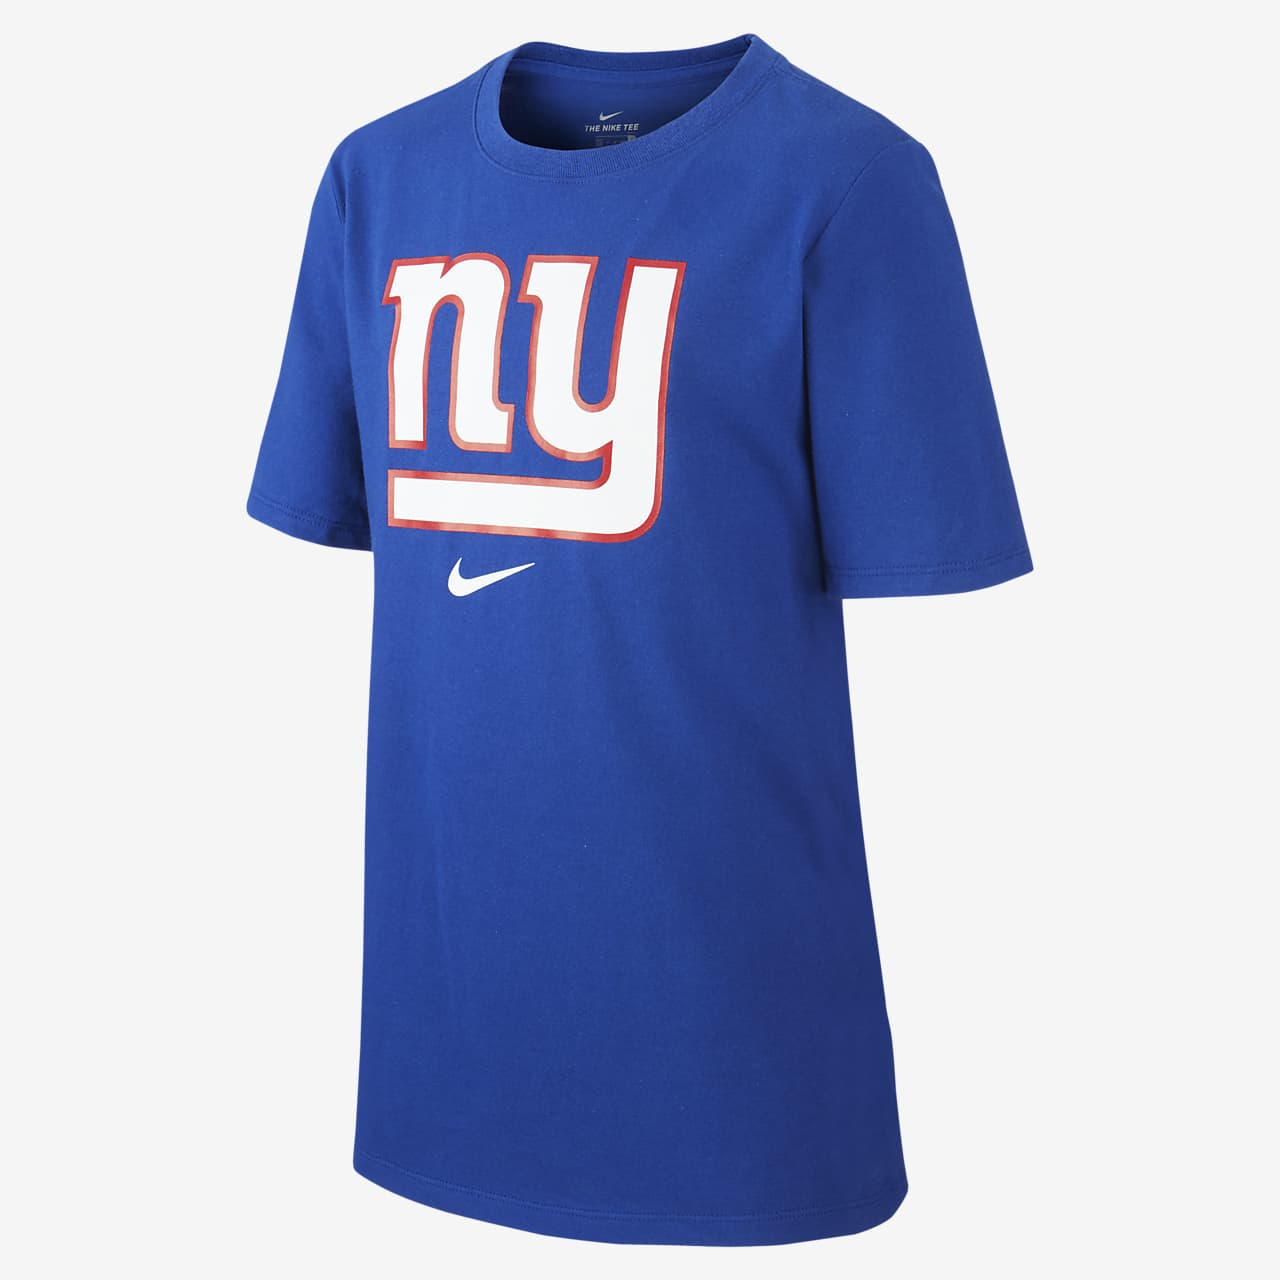 T-shirt Nike Dri-FIT (NFL Giants) - Ragazzi. Nike IT